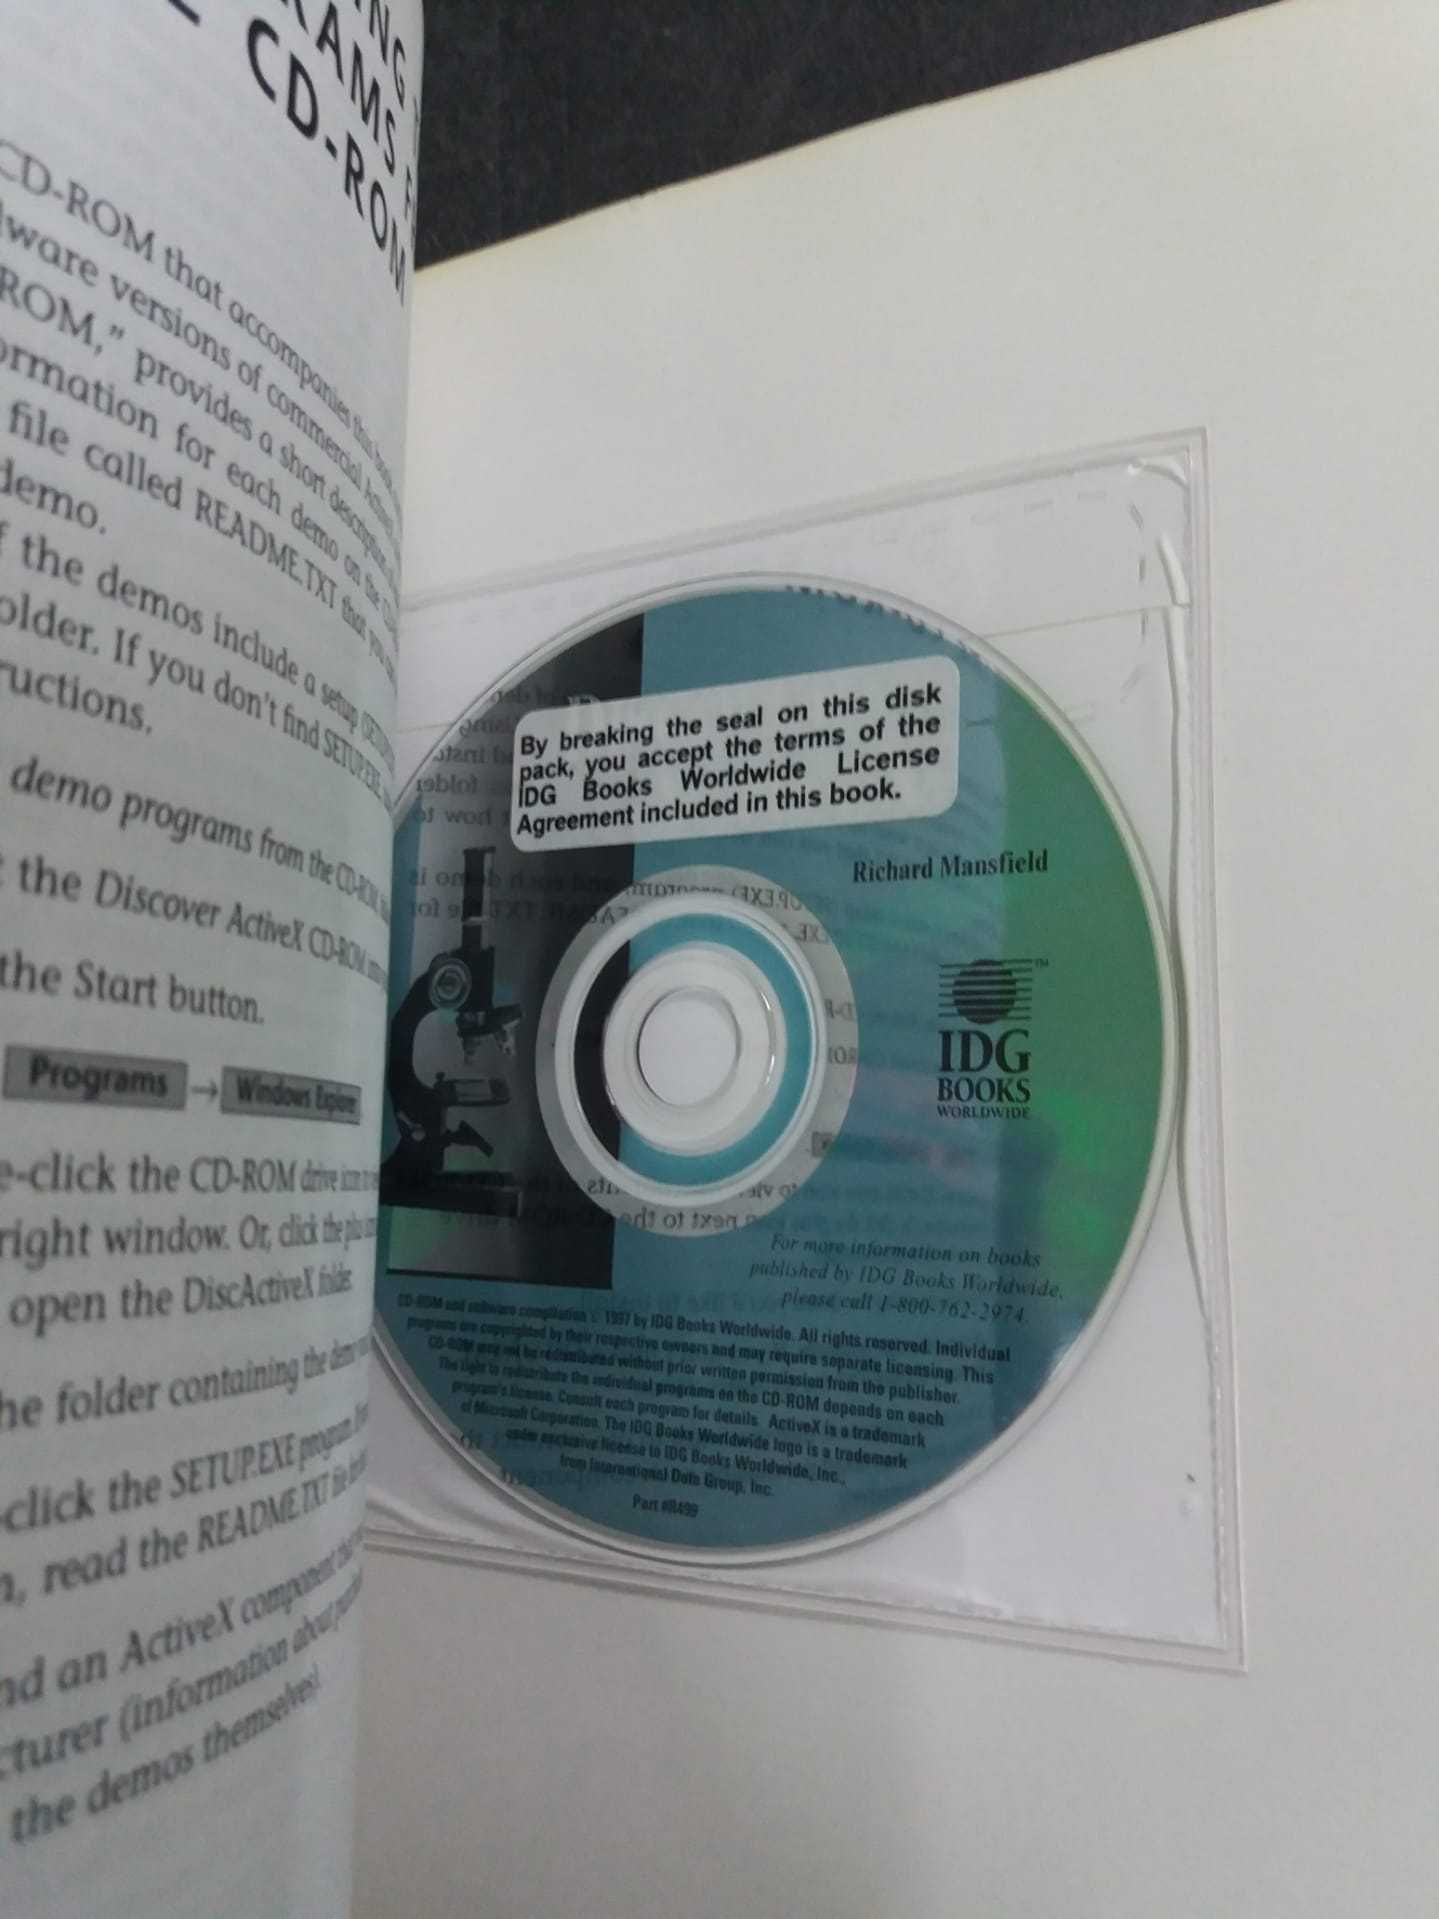 Livro "Discover Activex" com CD